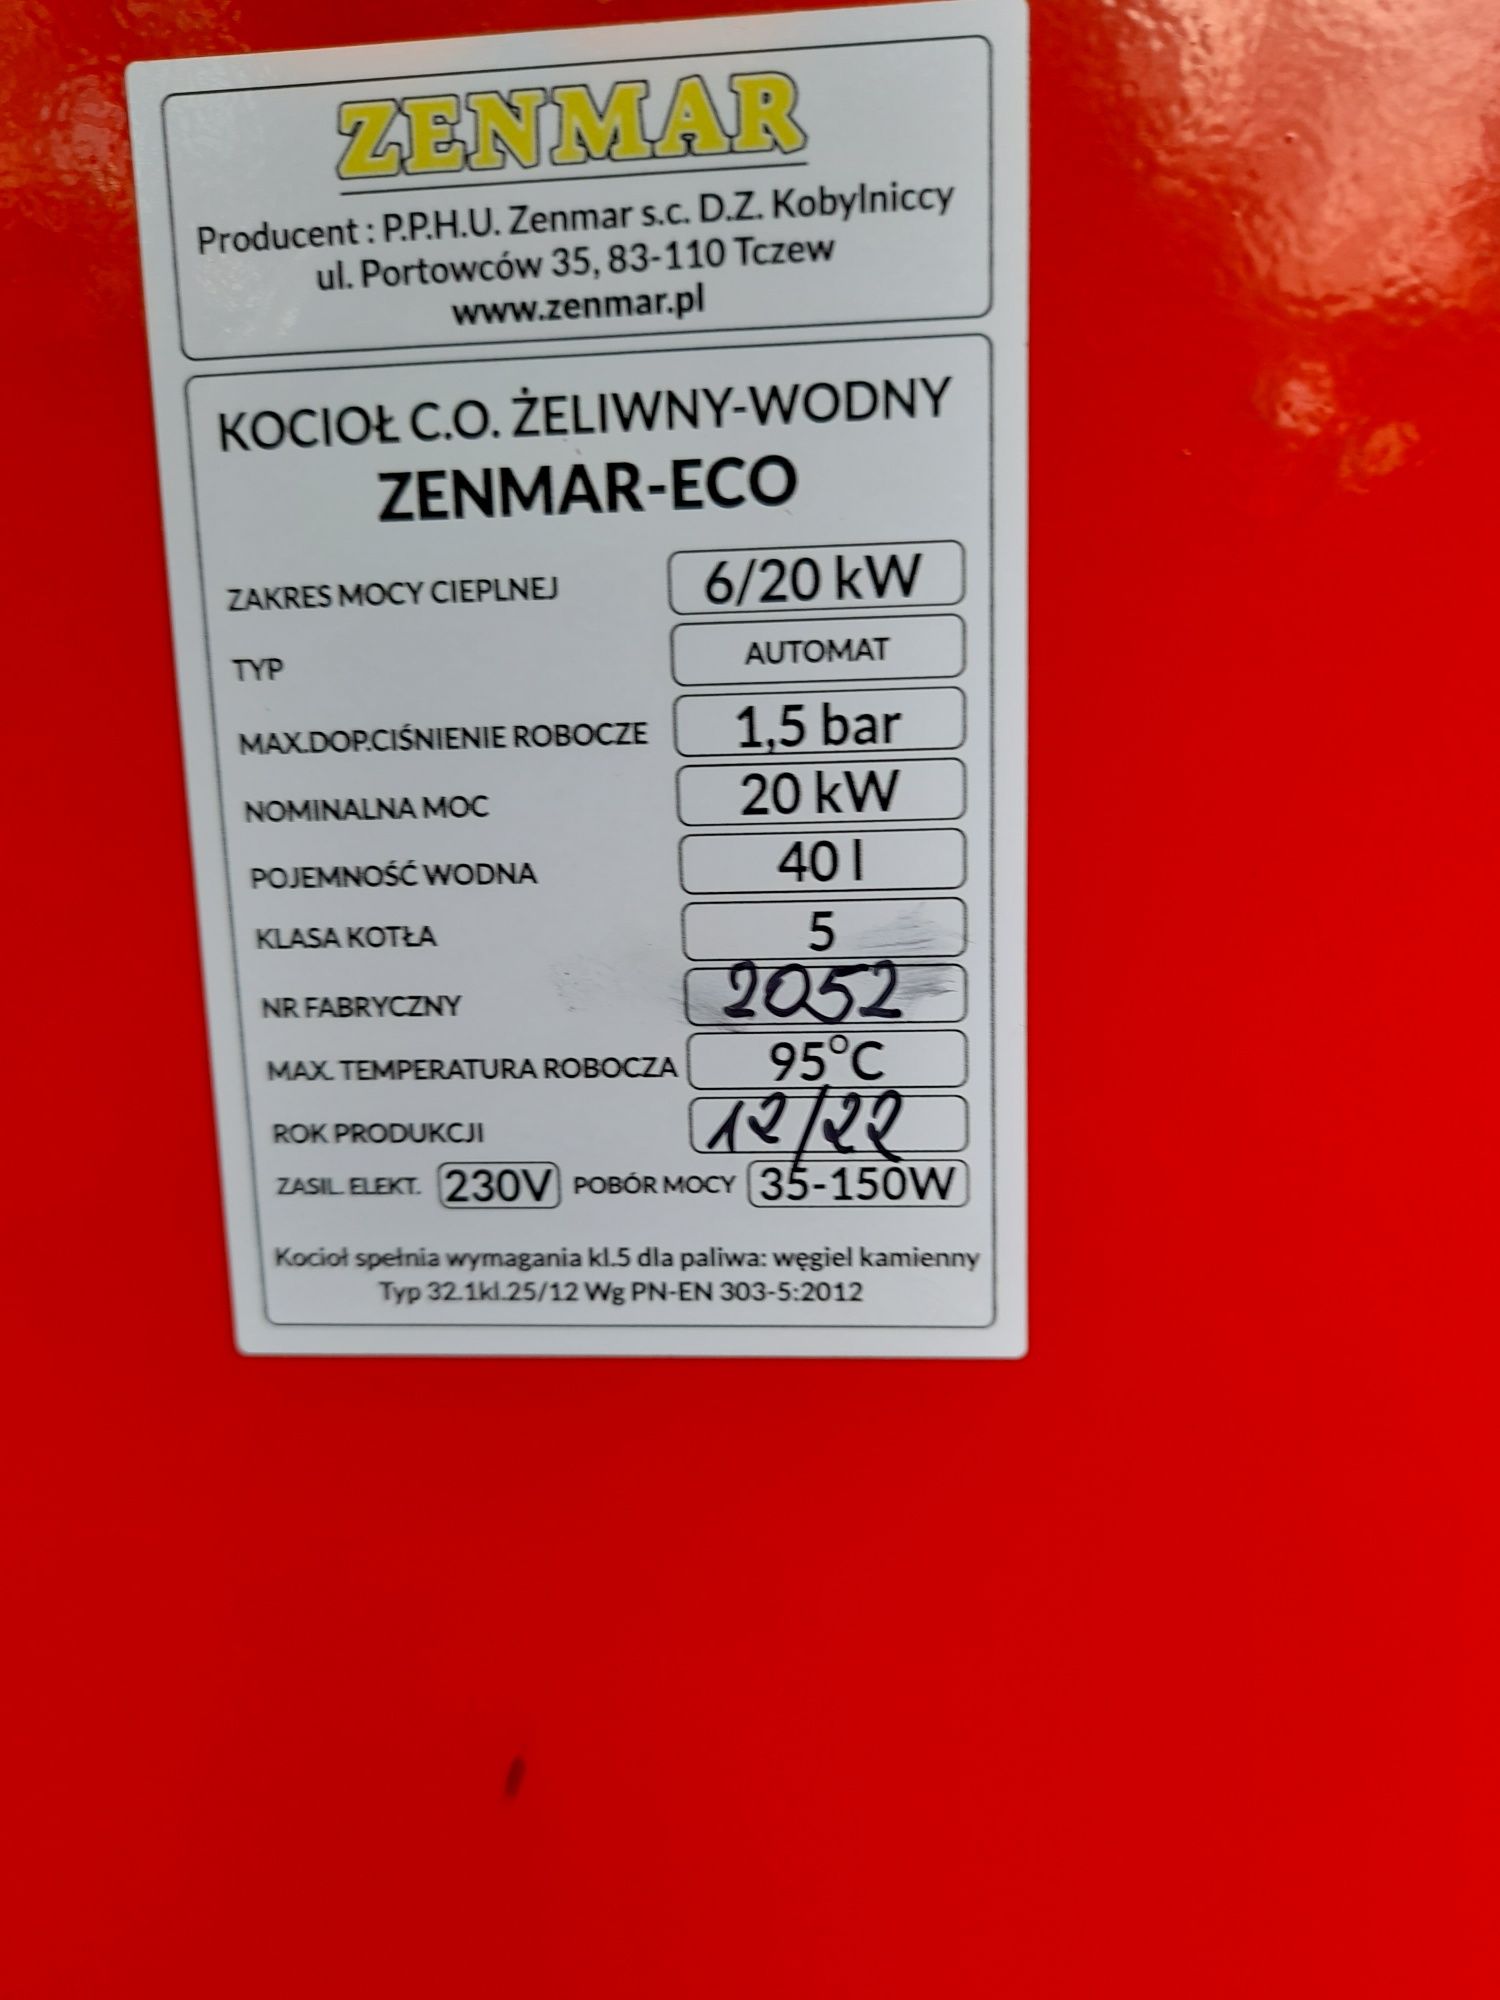 Kocioł Zenmar-eco z podajnikiem slimakowym 6-20kw